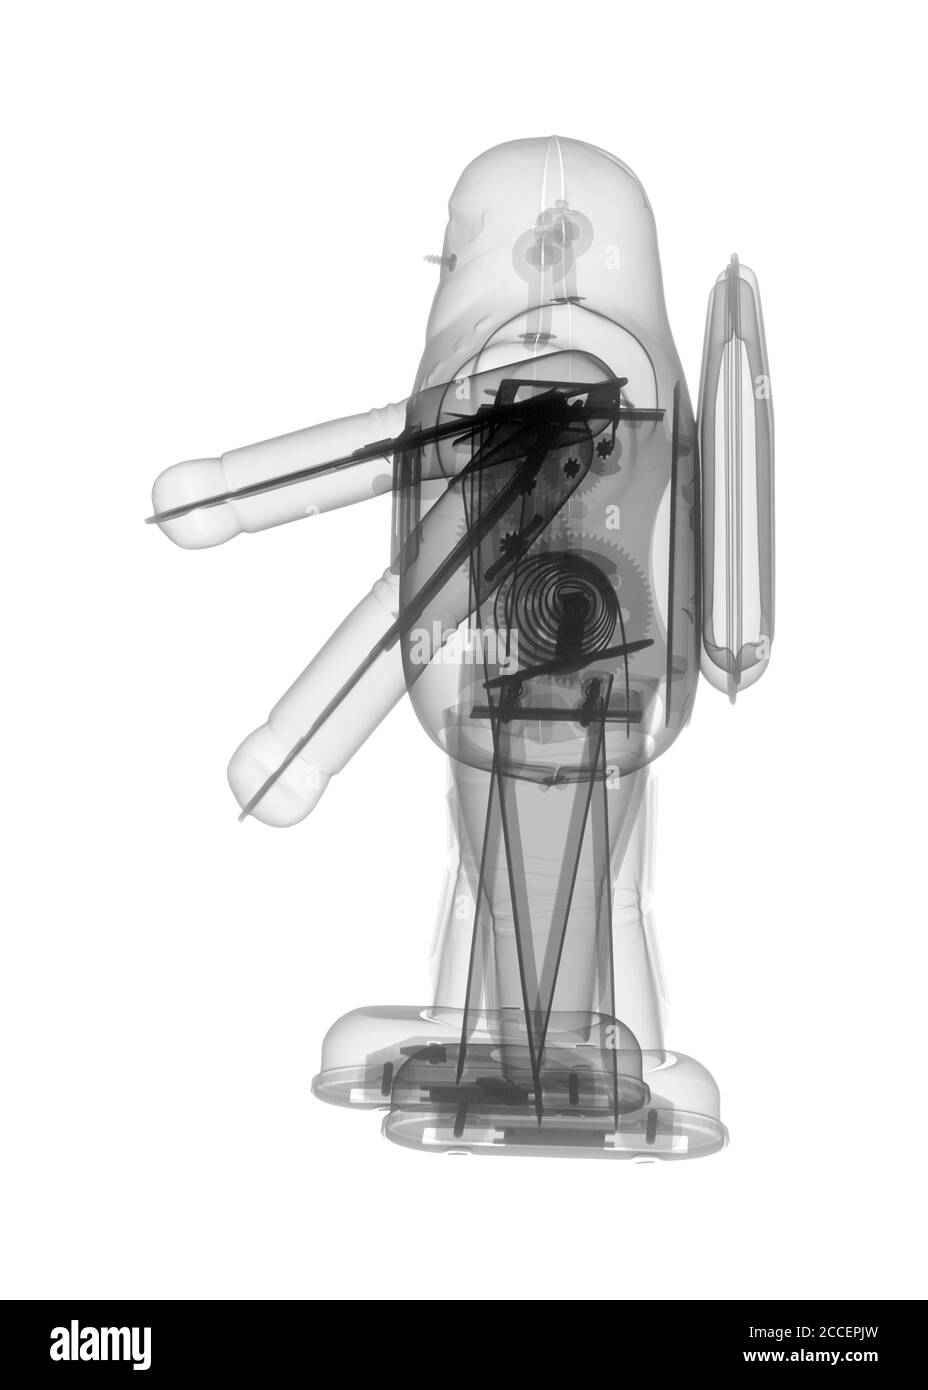 Robot de juguete de viento, rayos X. Foto de stock